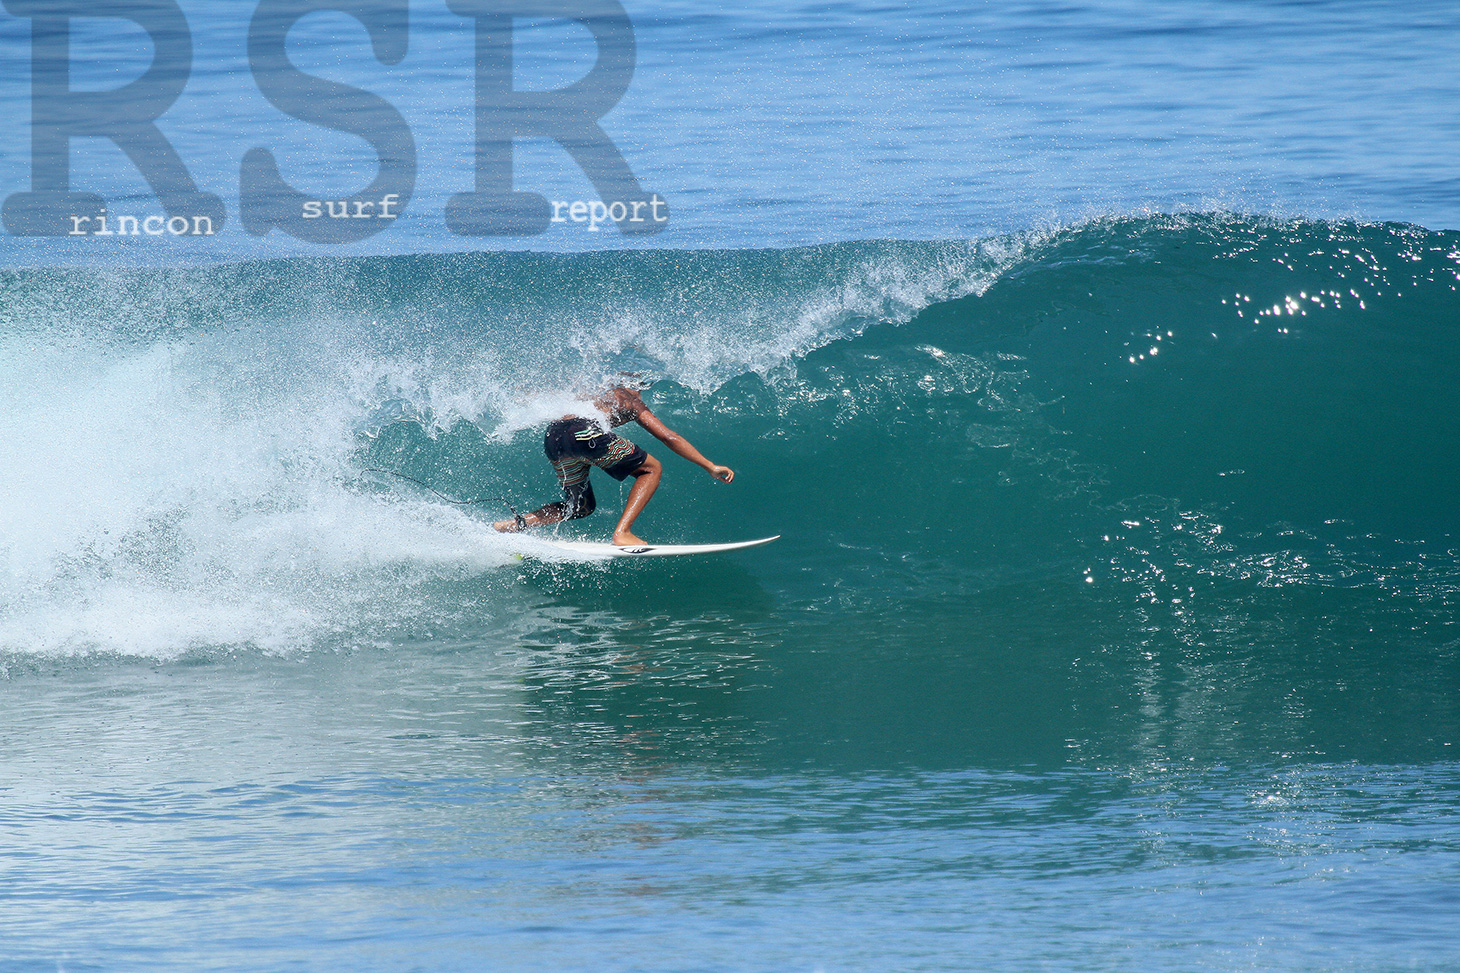 rincon surf report